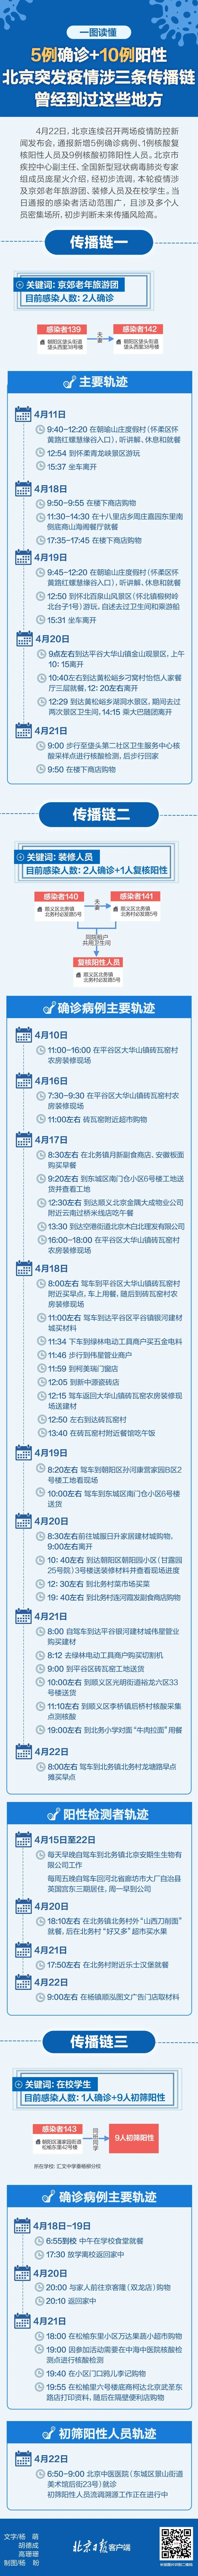 联动全国数百家出版社，北京图书大厦推出“全国新书首发平台”